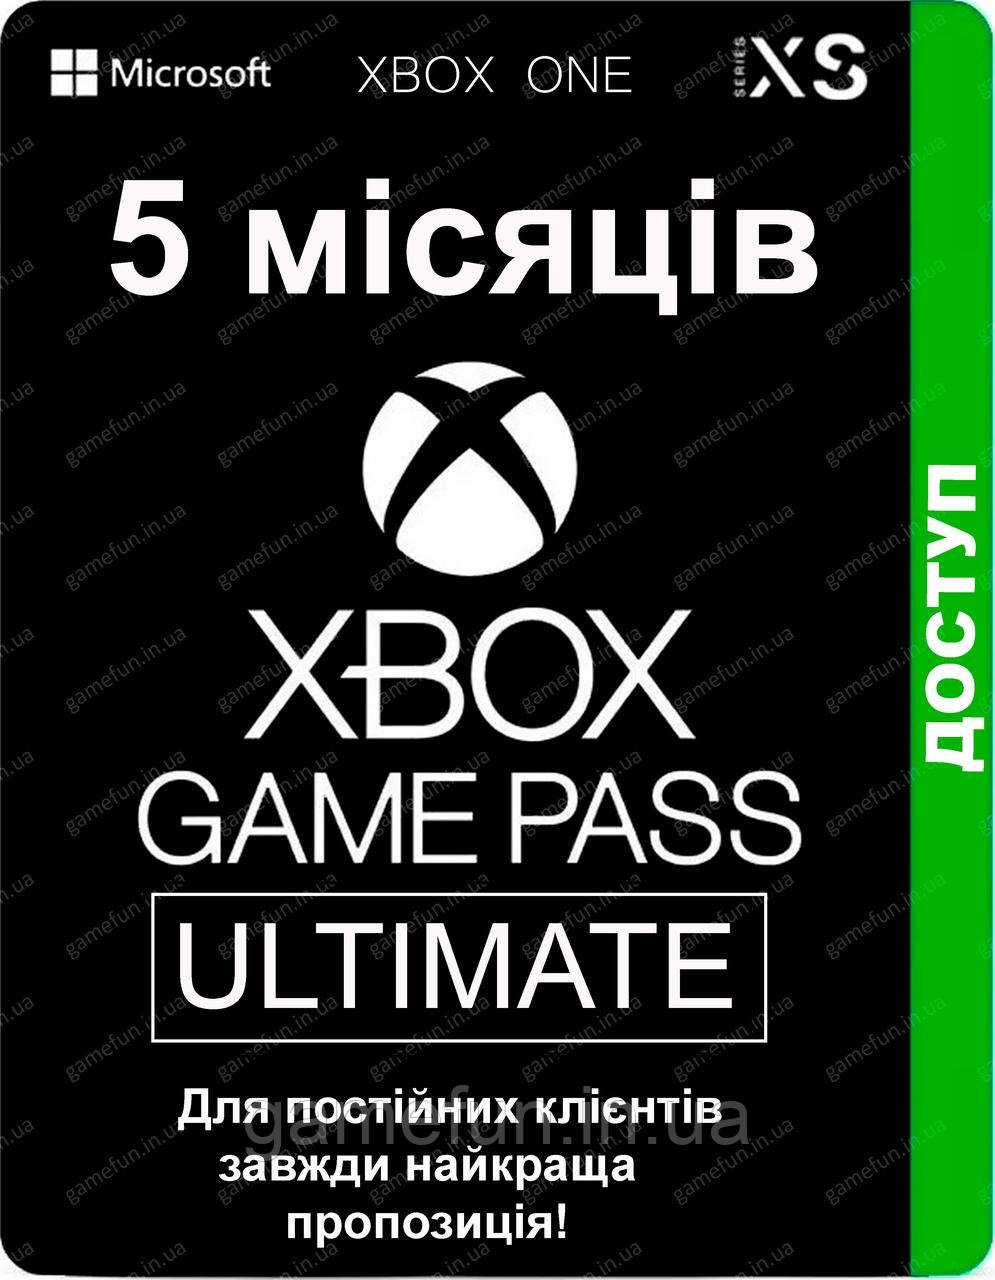 Xbox Game Pass Ultimate - 5 місяців (для постійних клієнтів) передплата